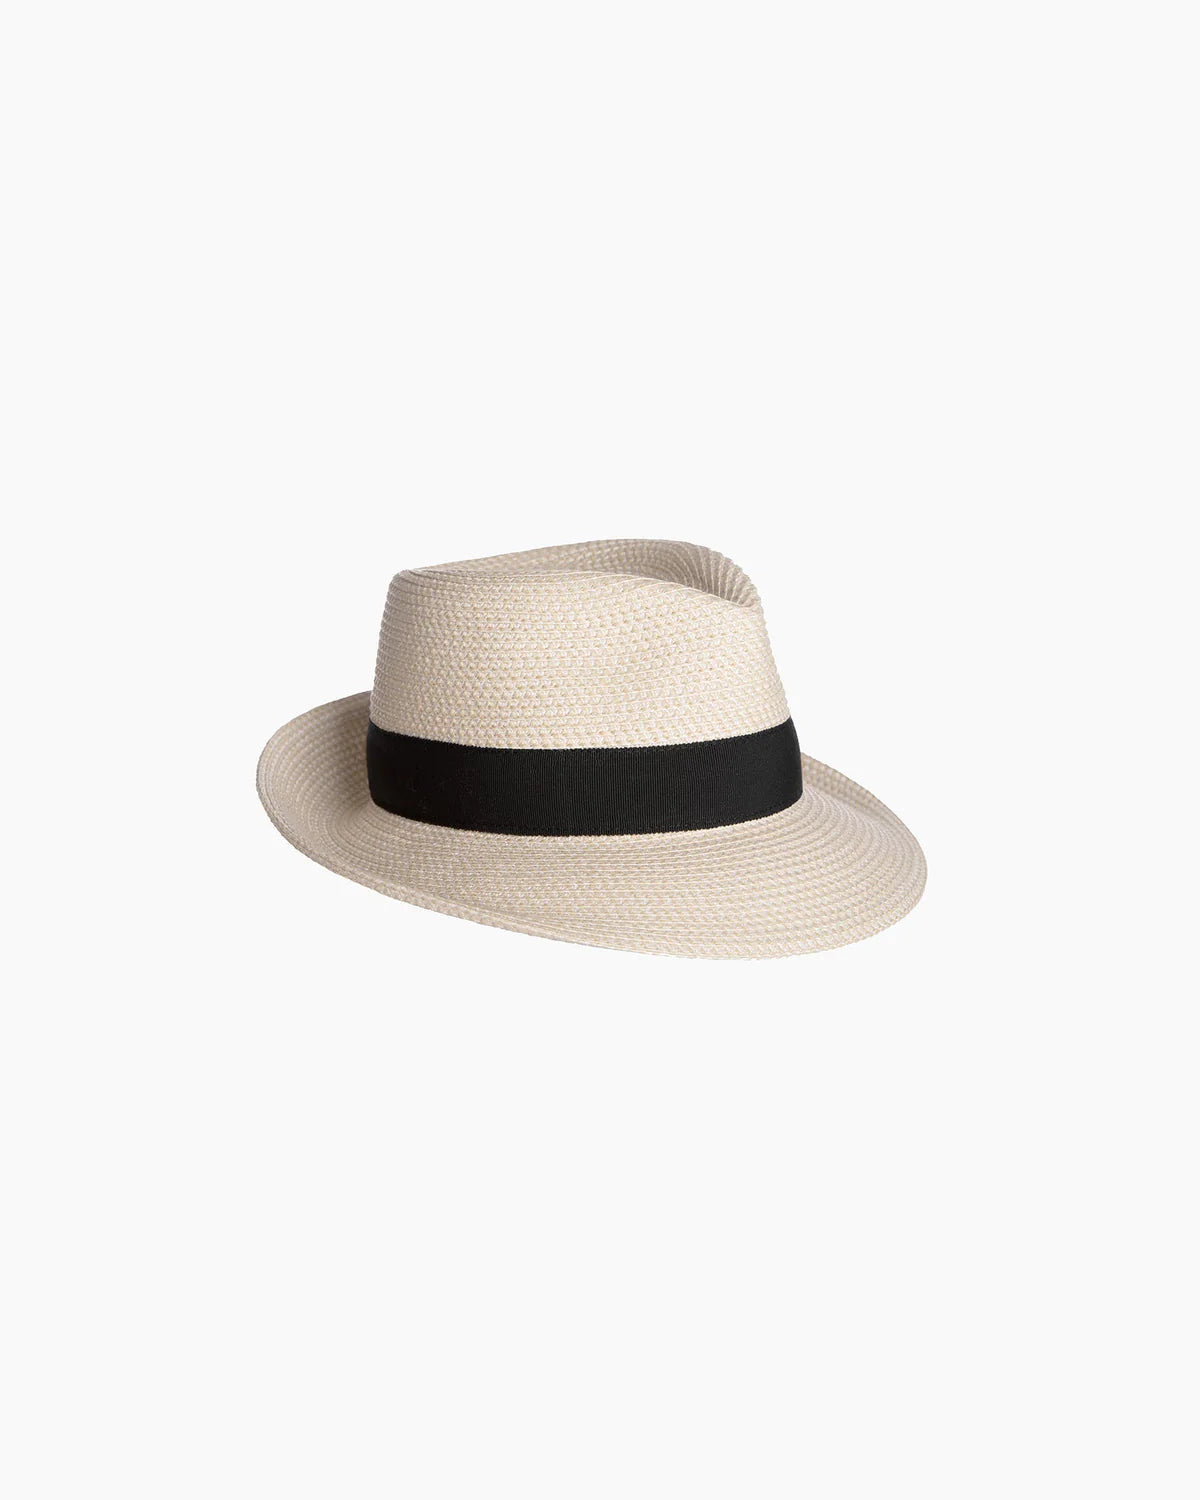 Squishee Classic Hat - Cream/Black